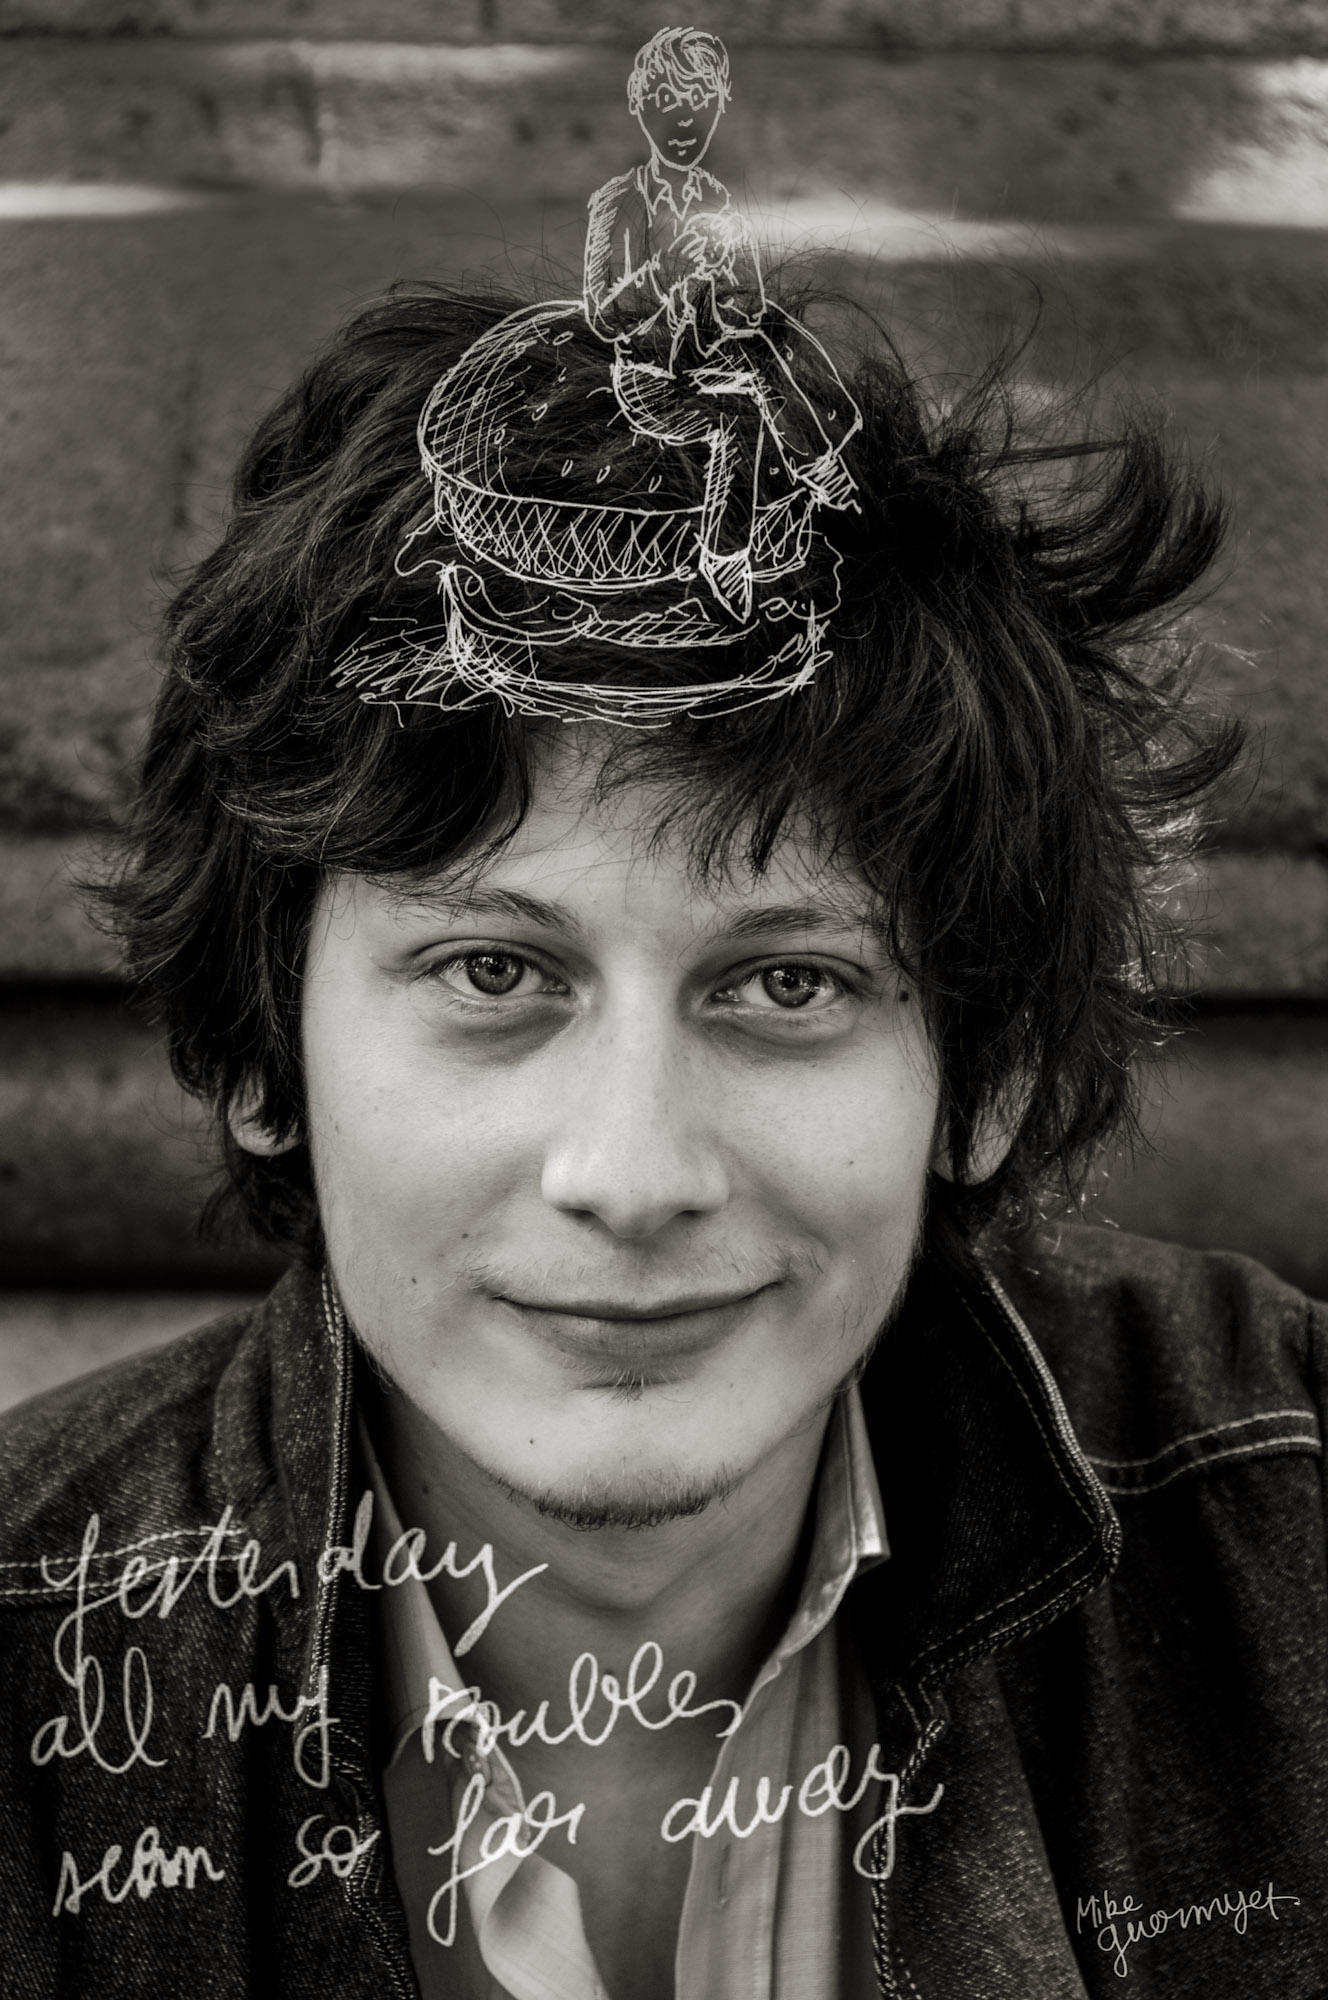 Mike Guermyet 27 anos, produtor cinematográfico, Paris, França, 13/07/2008  “Ontem meus problemas pareciam tão distantes.” (da música "Yesterday" de John Lennon e Paul McCartney)